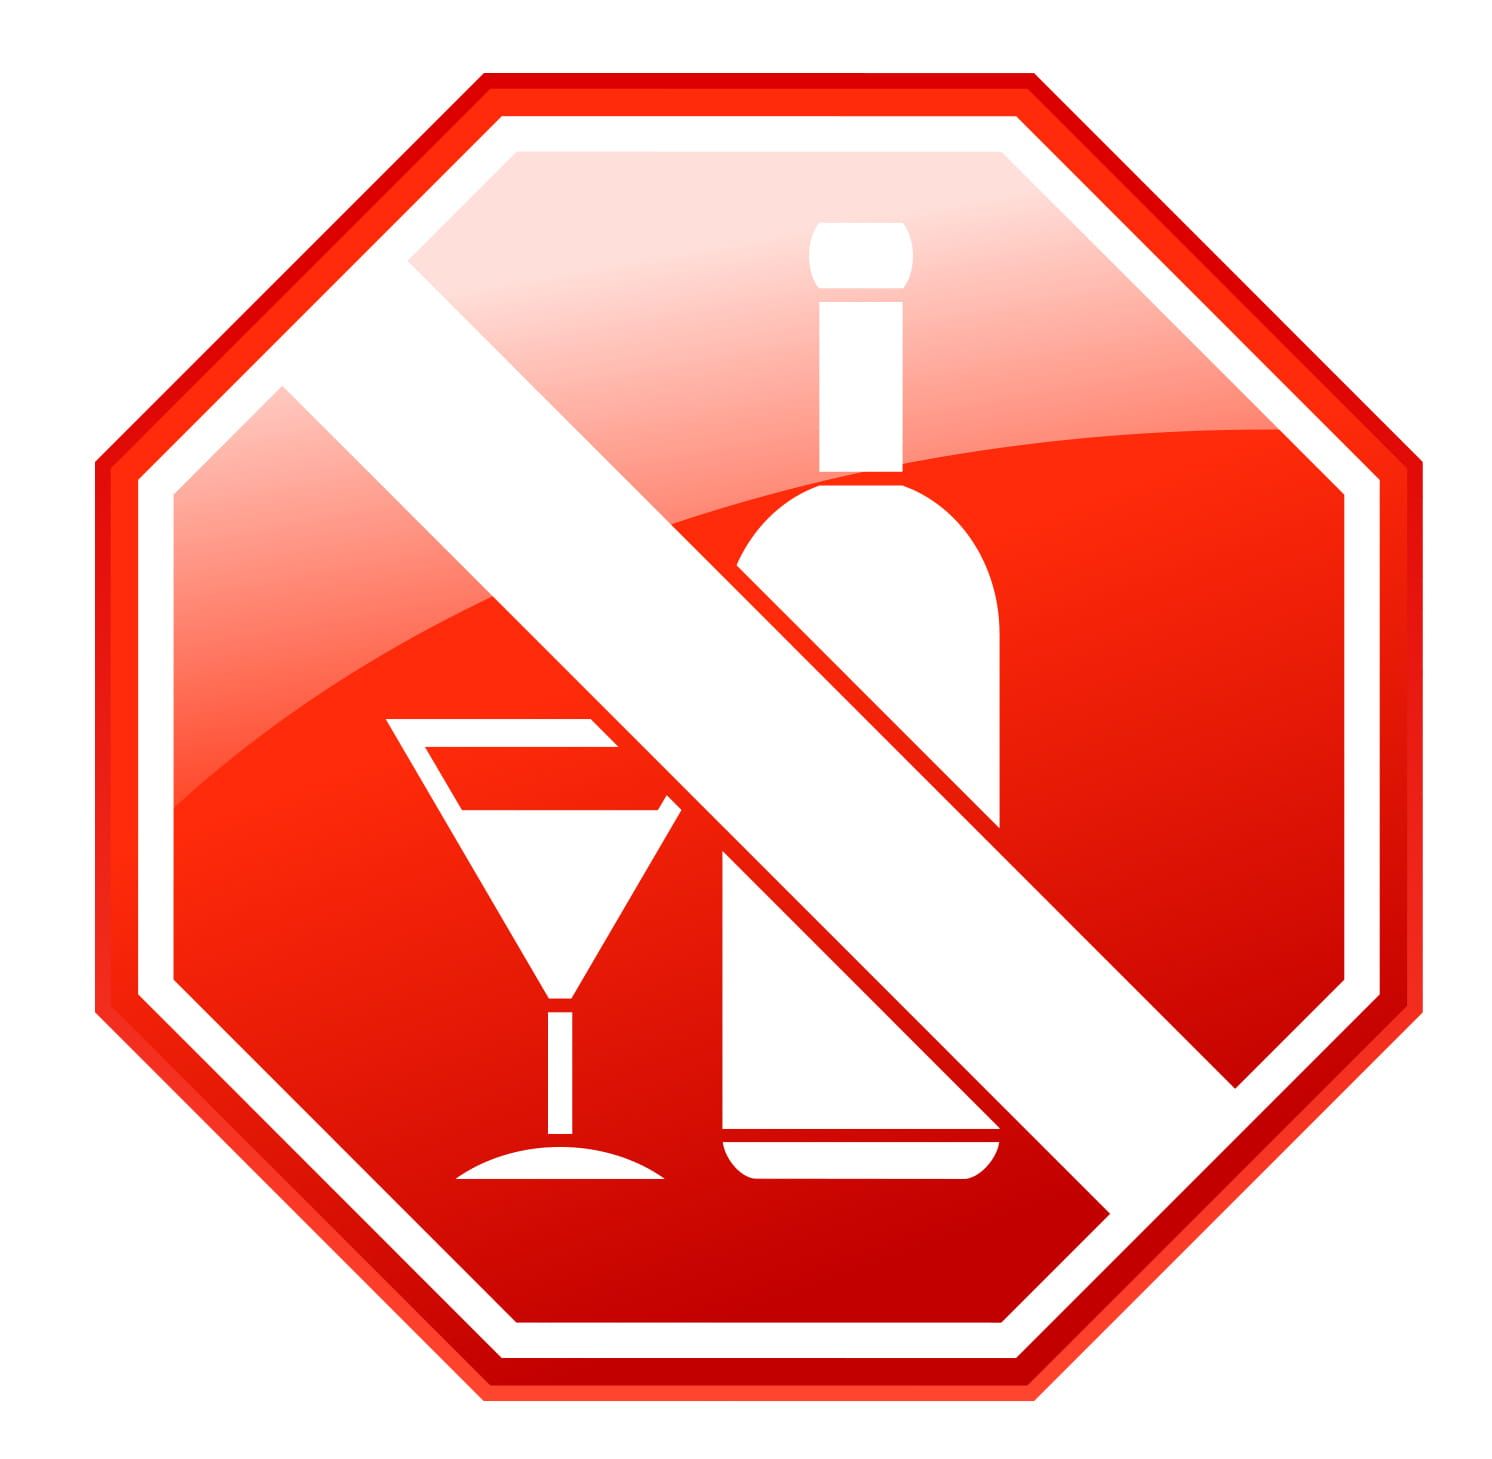 世界心脏联盟发布声明 适量饮酒也不利于健康